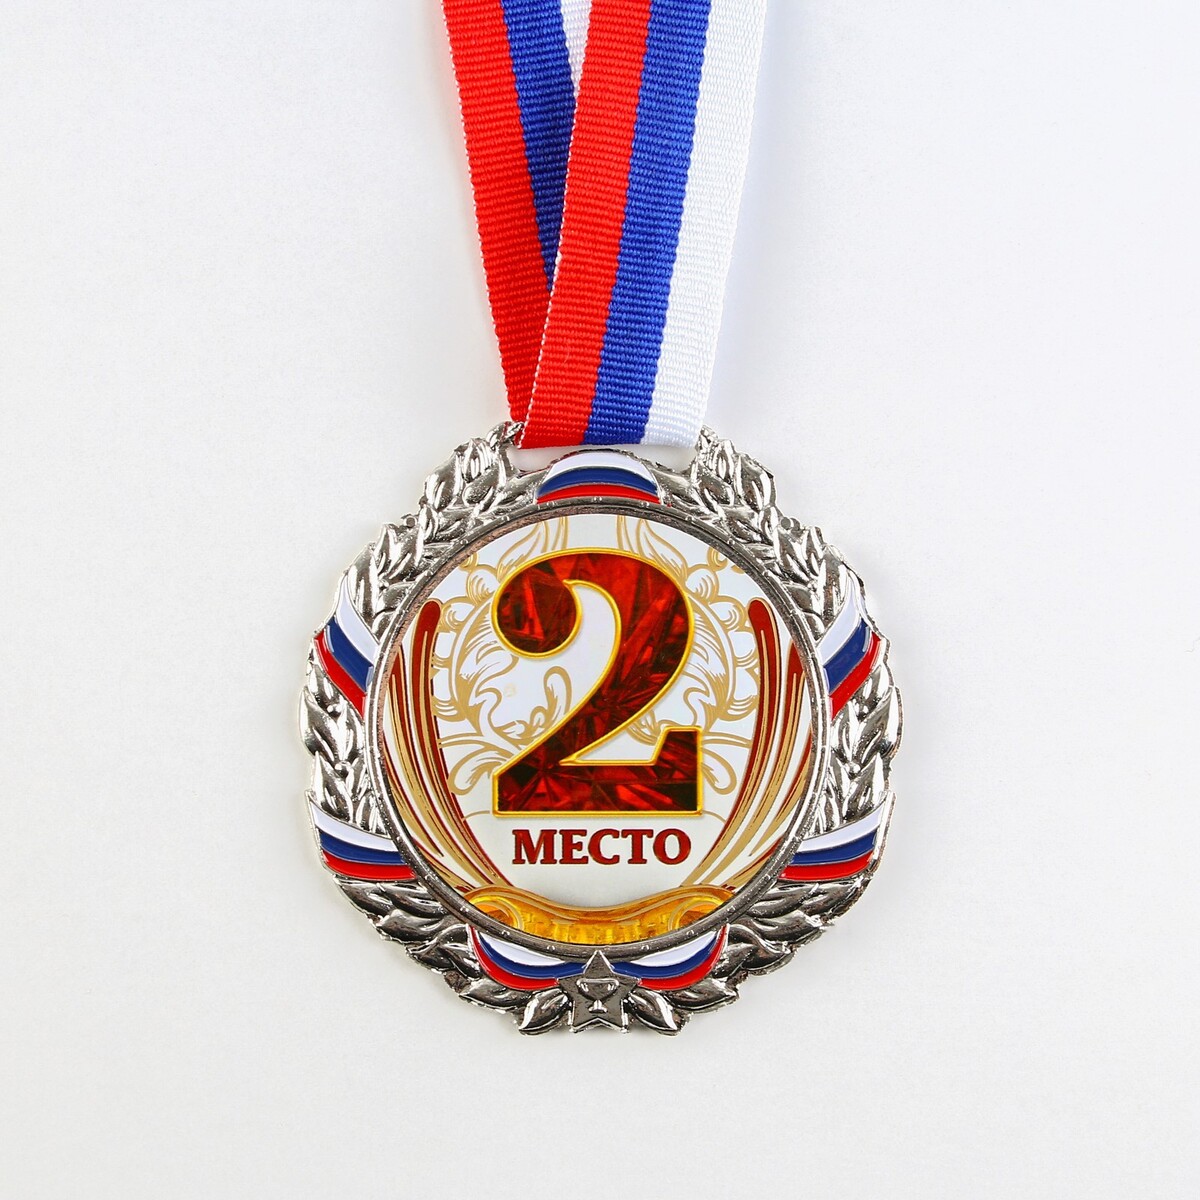 Медаль призовая 075 диам 6,5 см. 2 место, триколор. цвет сер. с лентой место под солнцем